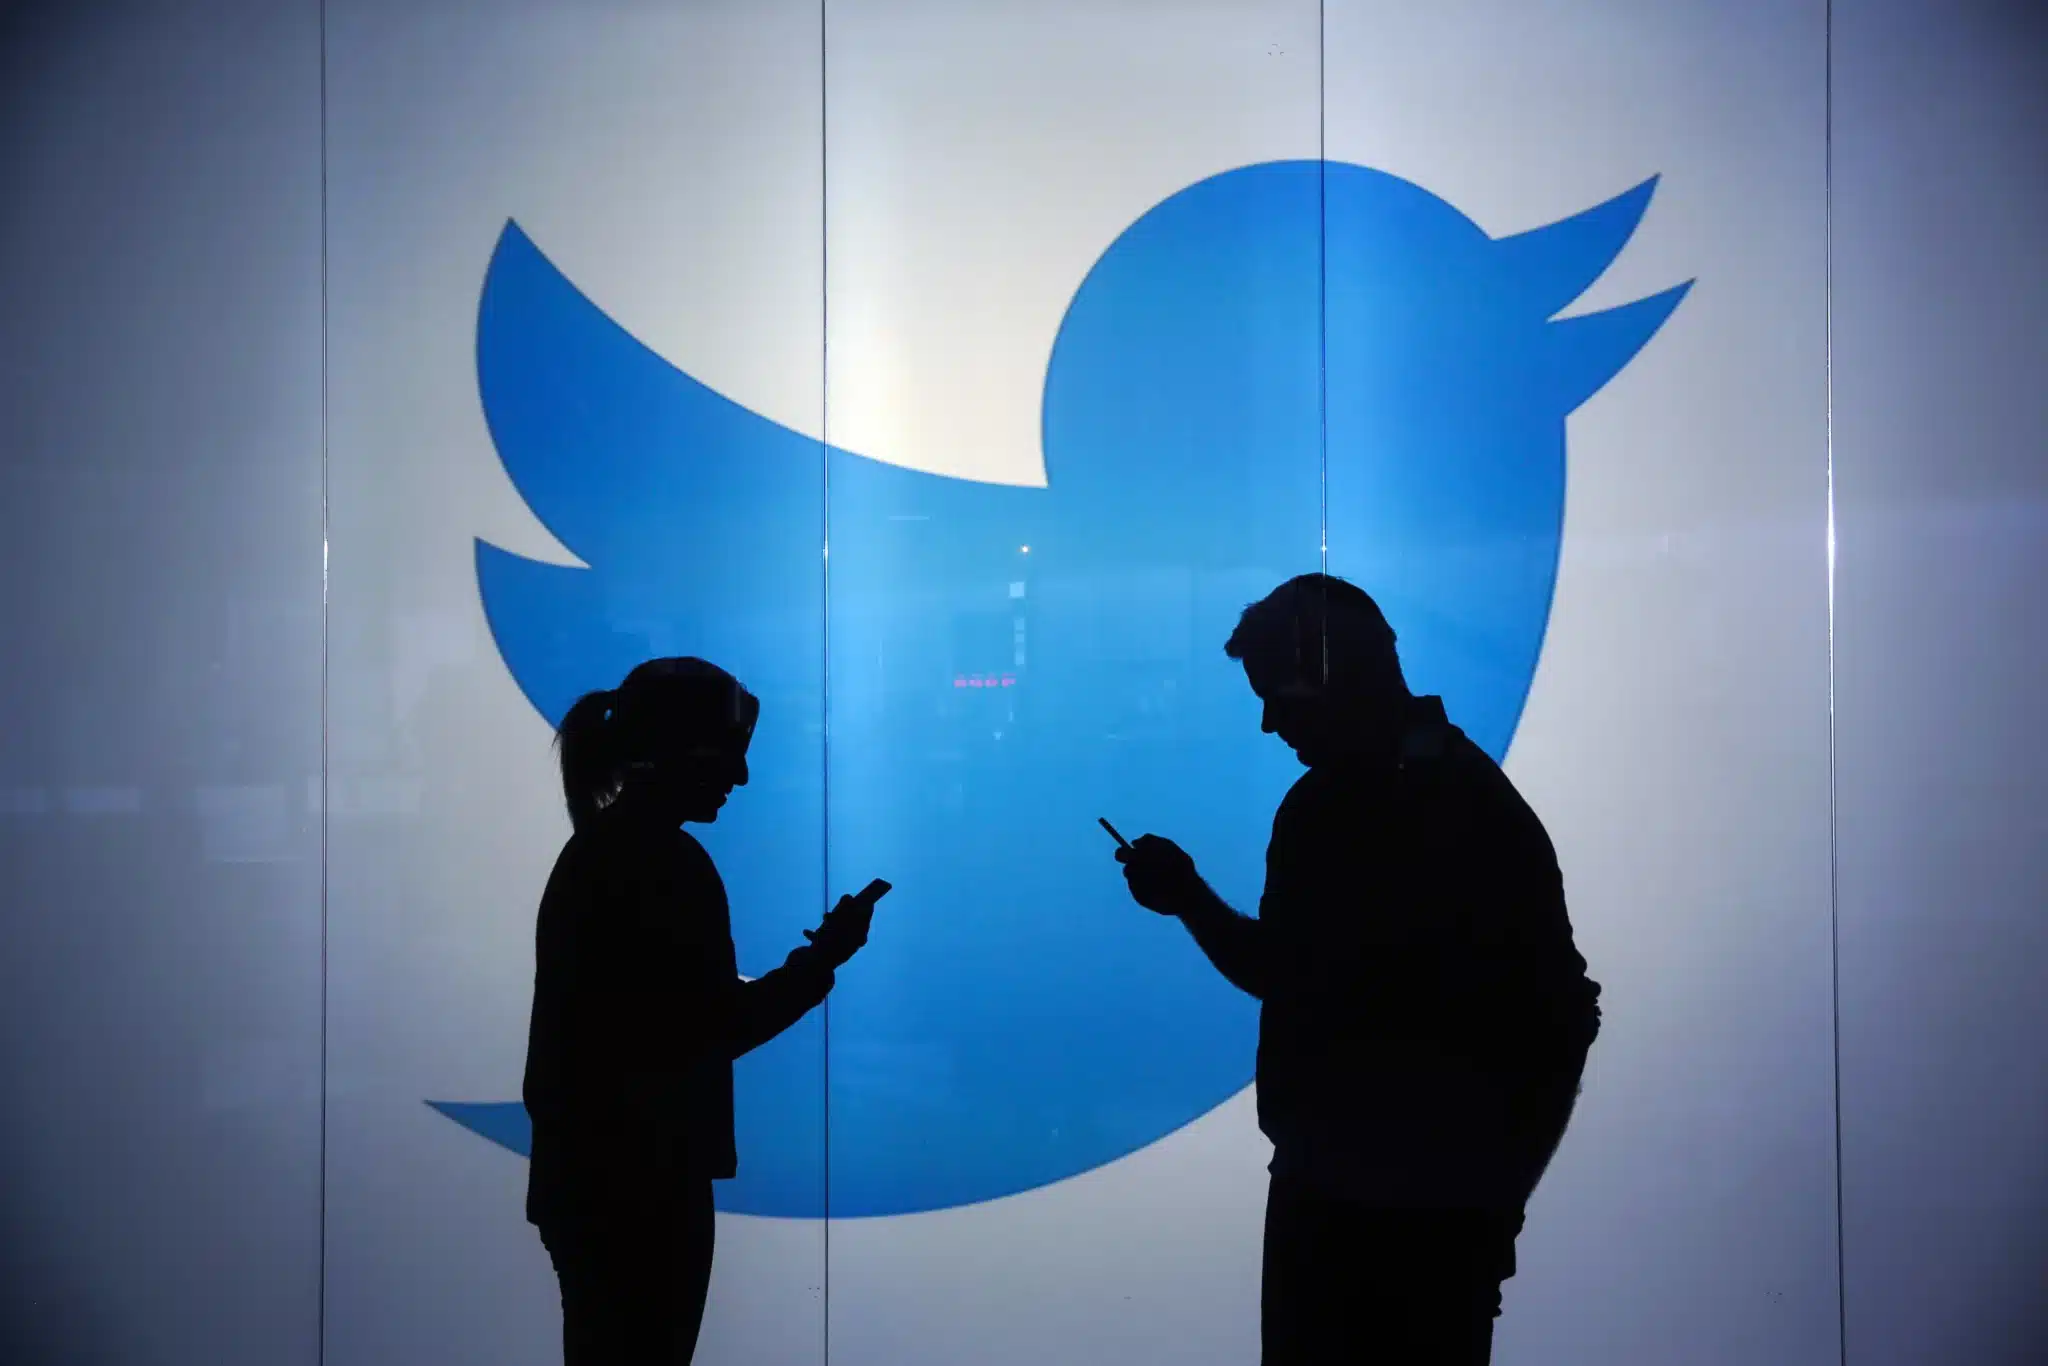 توقعات بأن تخسر تويتر 32 مليون مستخدم في العامين المقبلين